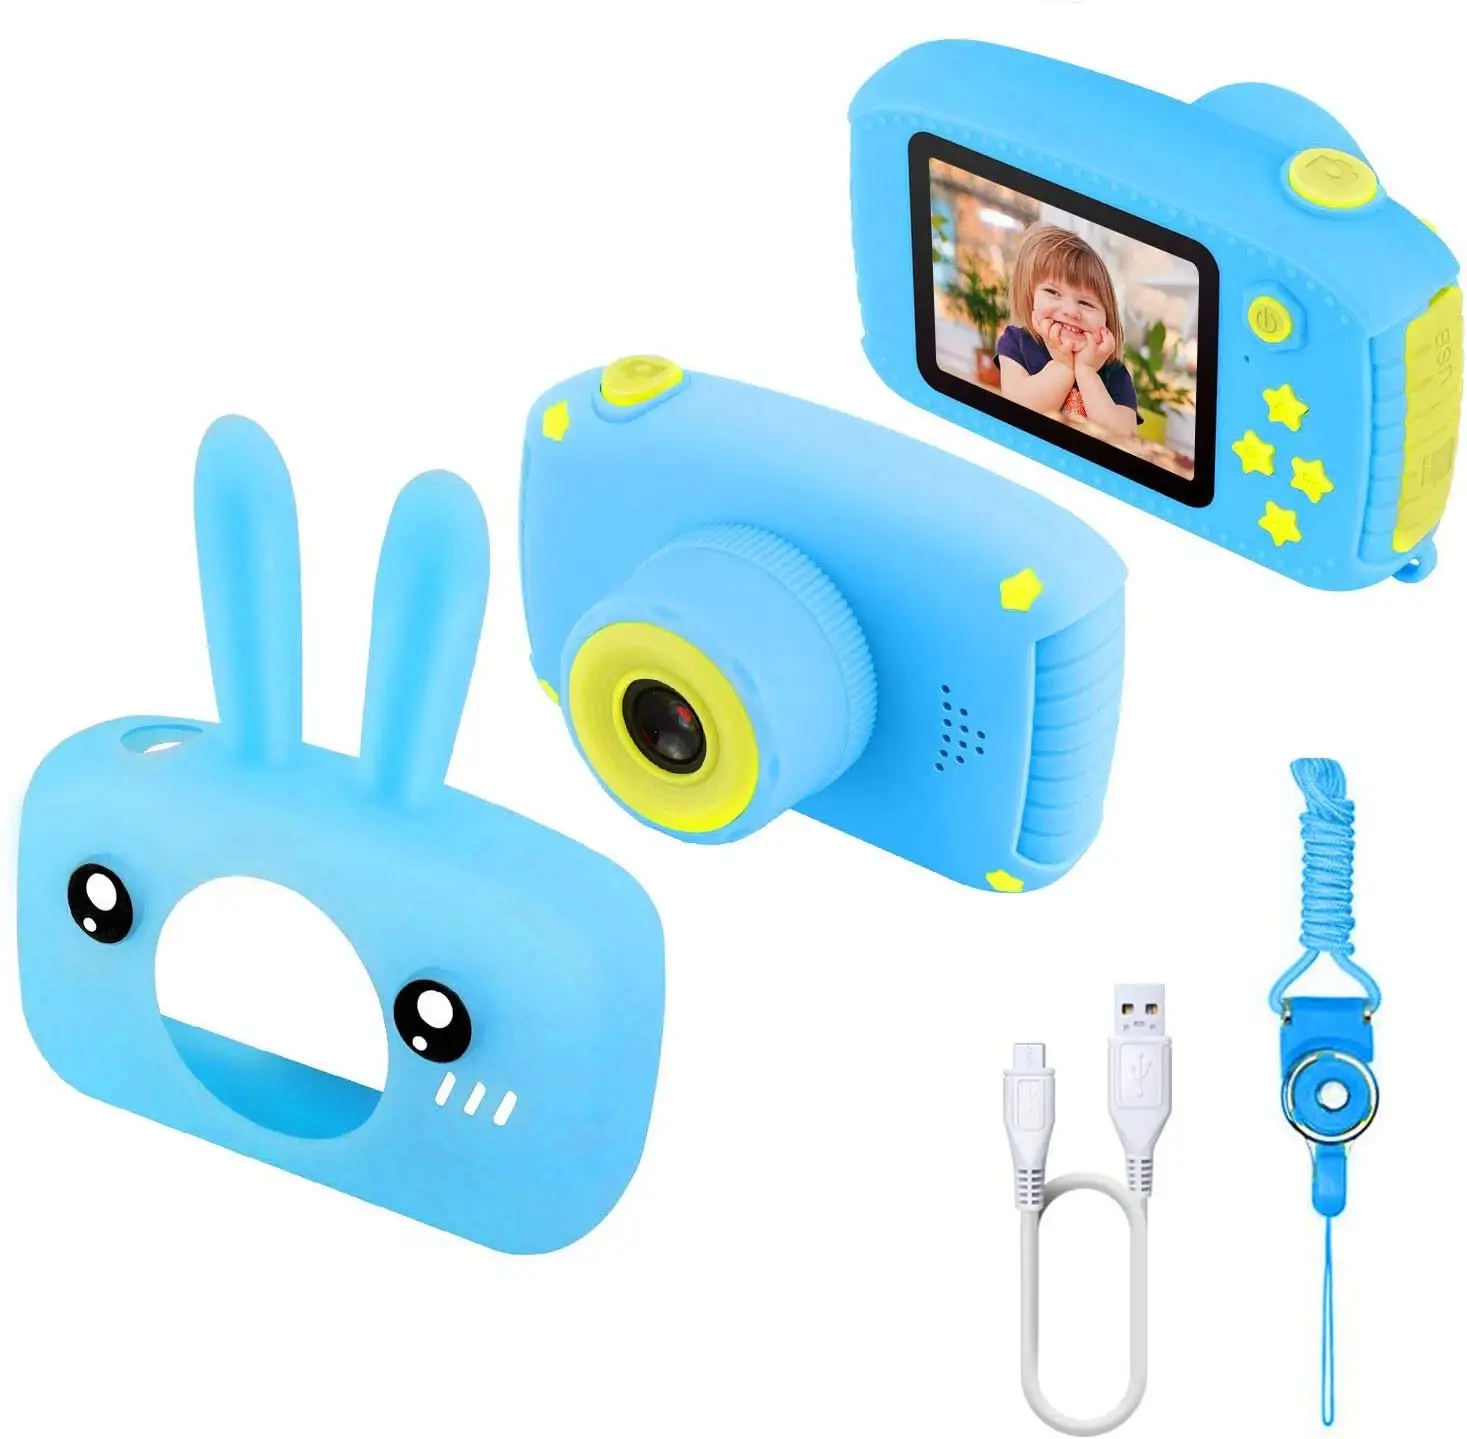 Bán nóng Đồ chơi kỹ thuật số 12MP Máy ảnh 2 inch Mini SLR Hỗ trợ máy ghi video Truyền USB cho trẻ em Quà tặng máy ảnh kỹ thuật s